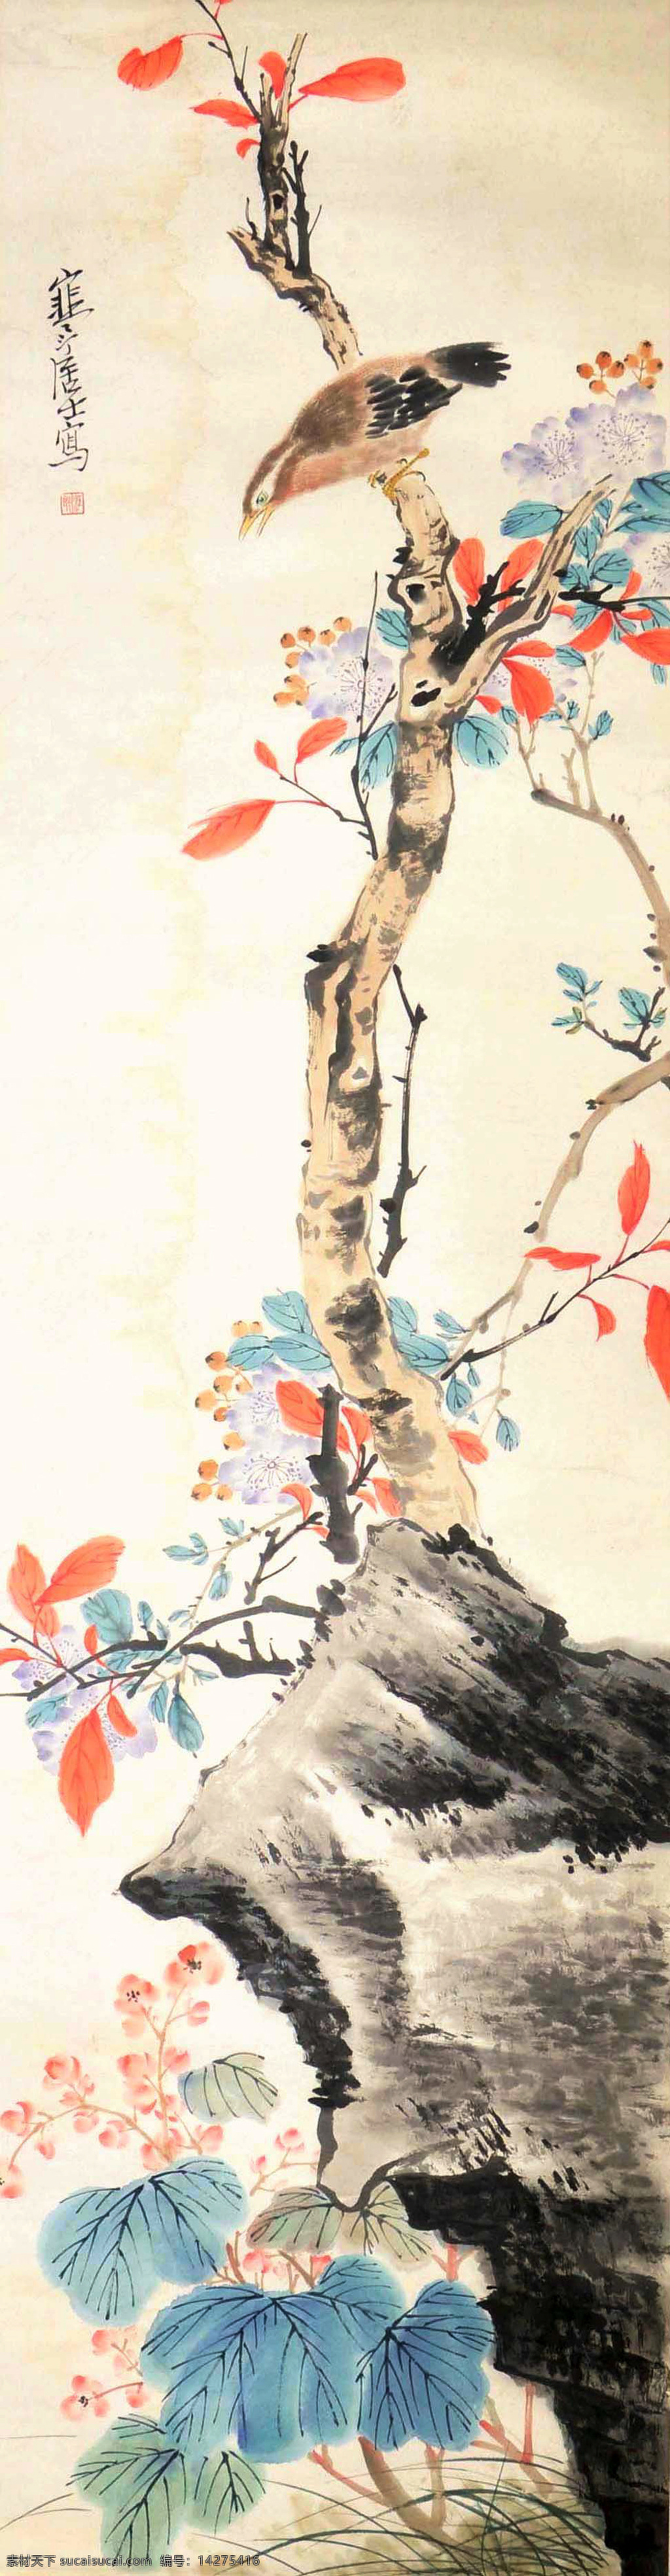 江寒汀 花鸟 水墨画 古画 国画 中国画 传统画 名家 绘画 艺术 文化艺术 绘画书法